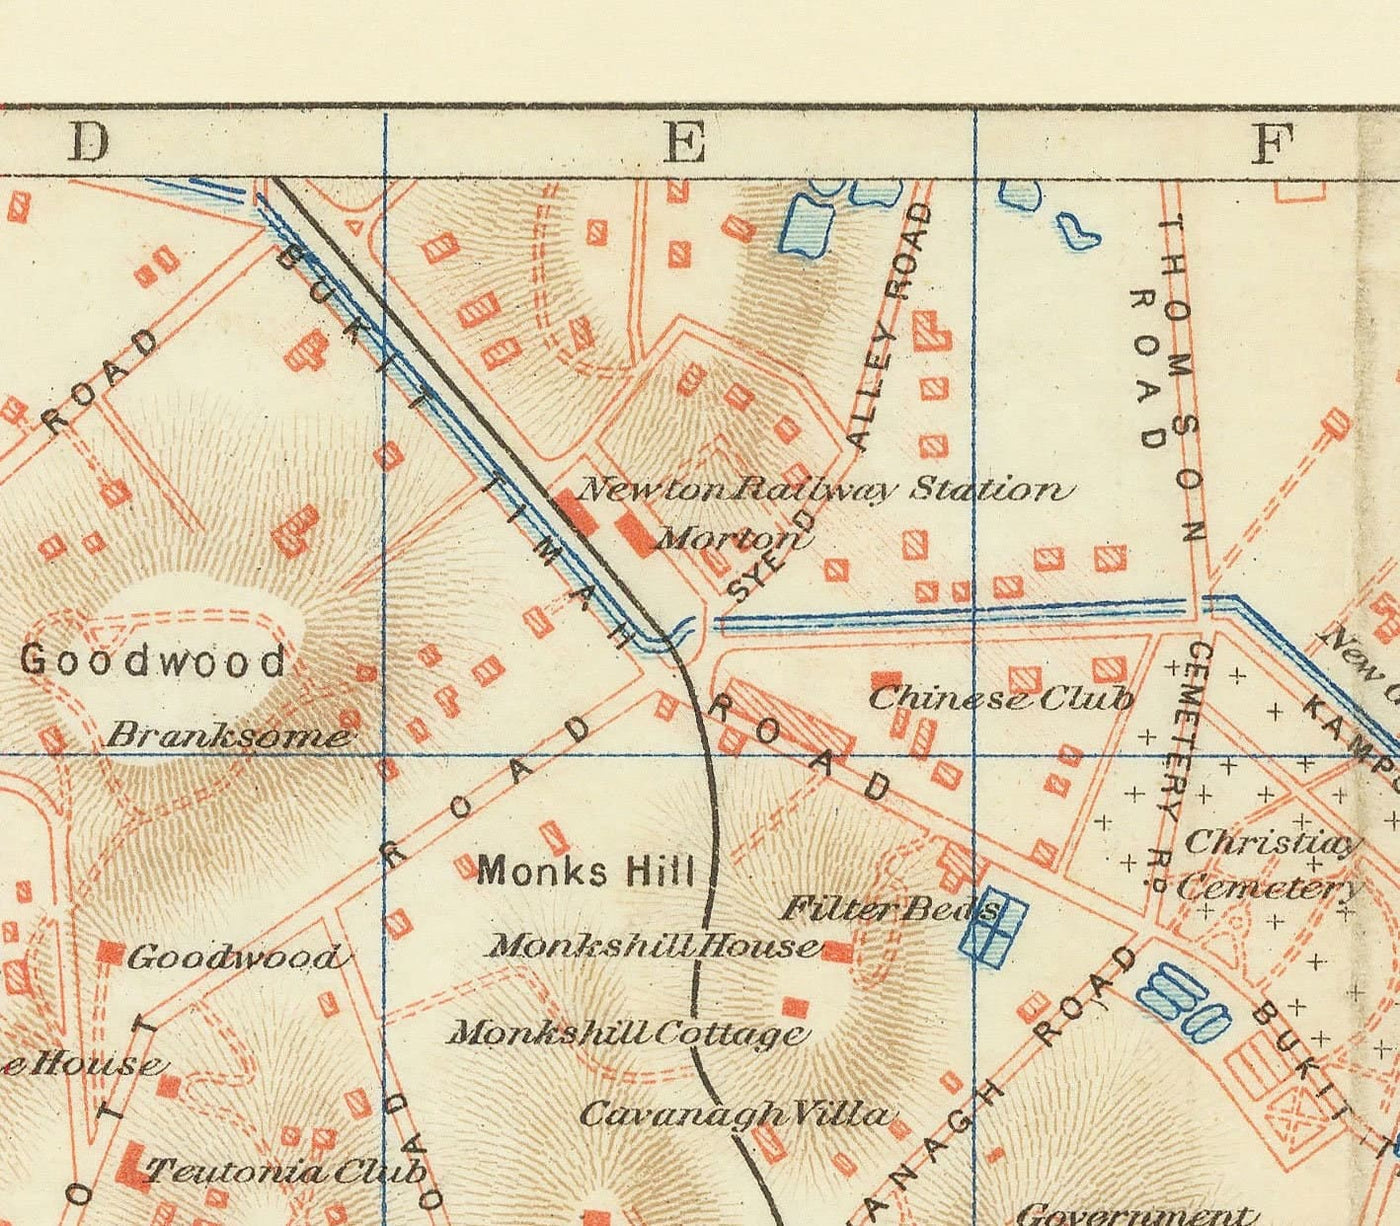 Mapa antiguo raro de Singapur, 1917 - Colonia del Imperio Británico, Pulau Ujong, Jardines botánicos, Marina, Bahía